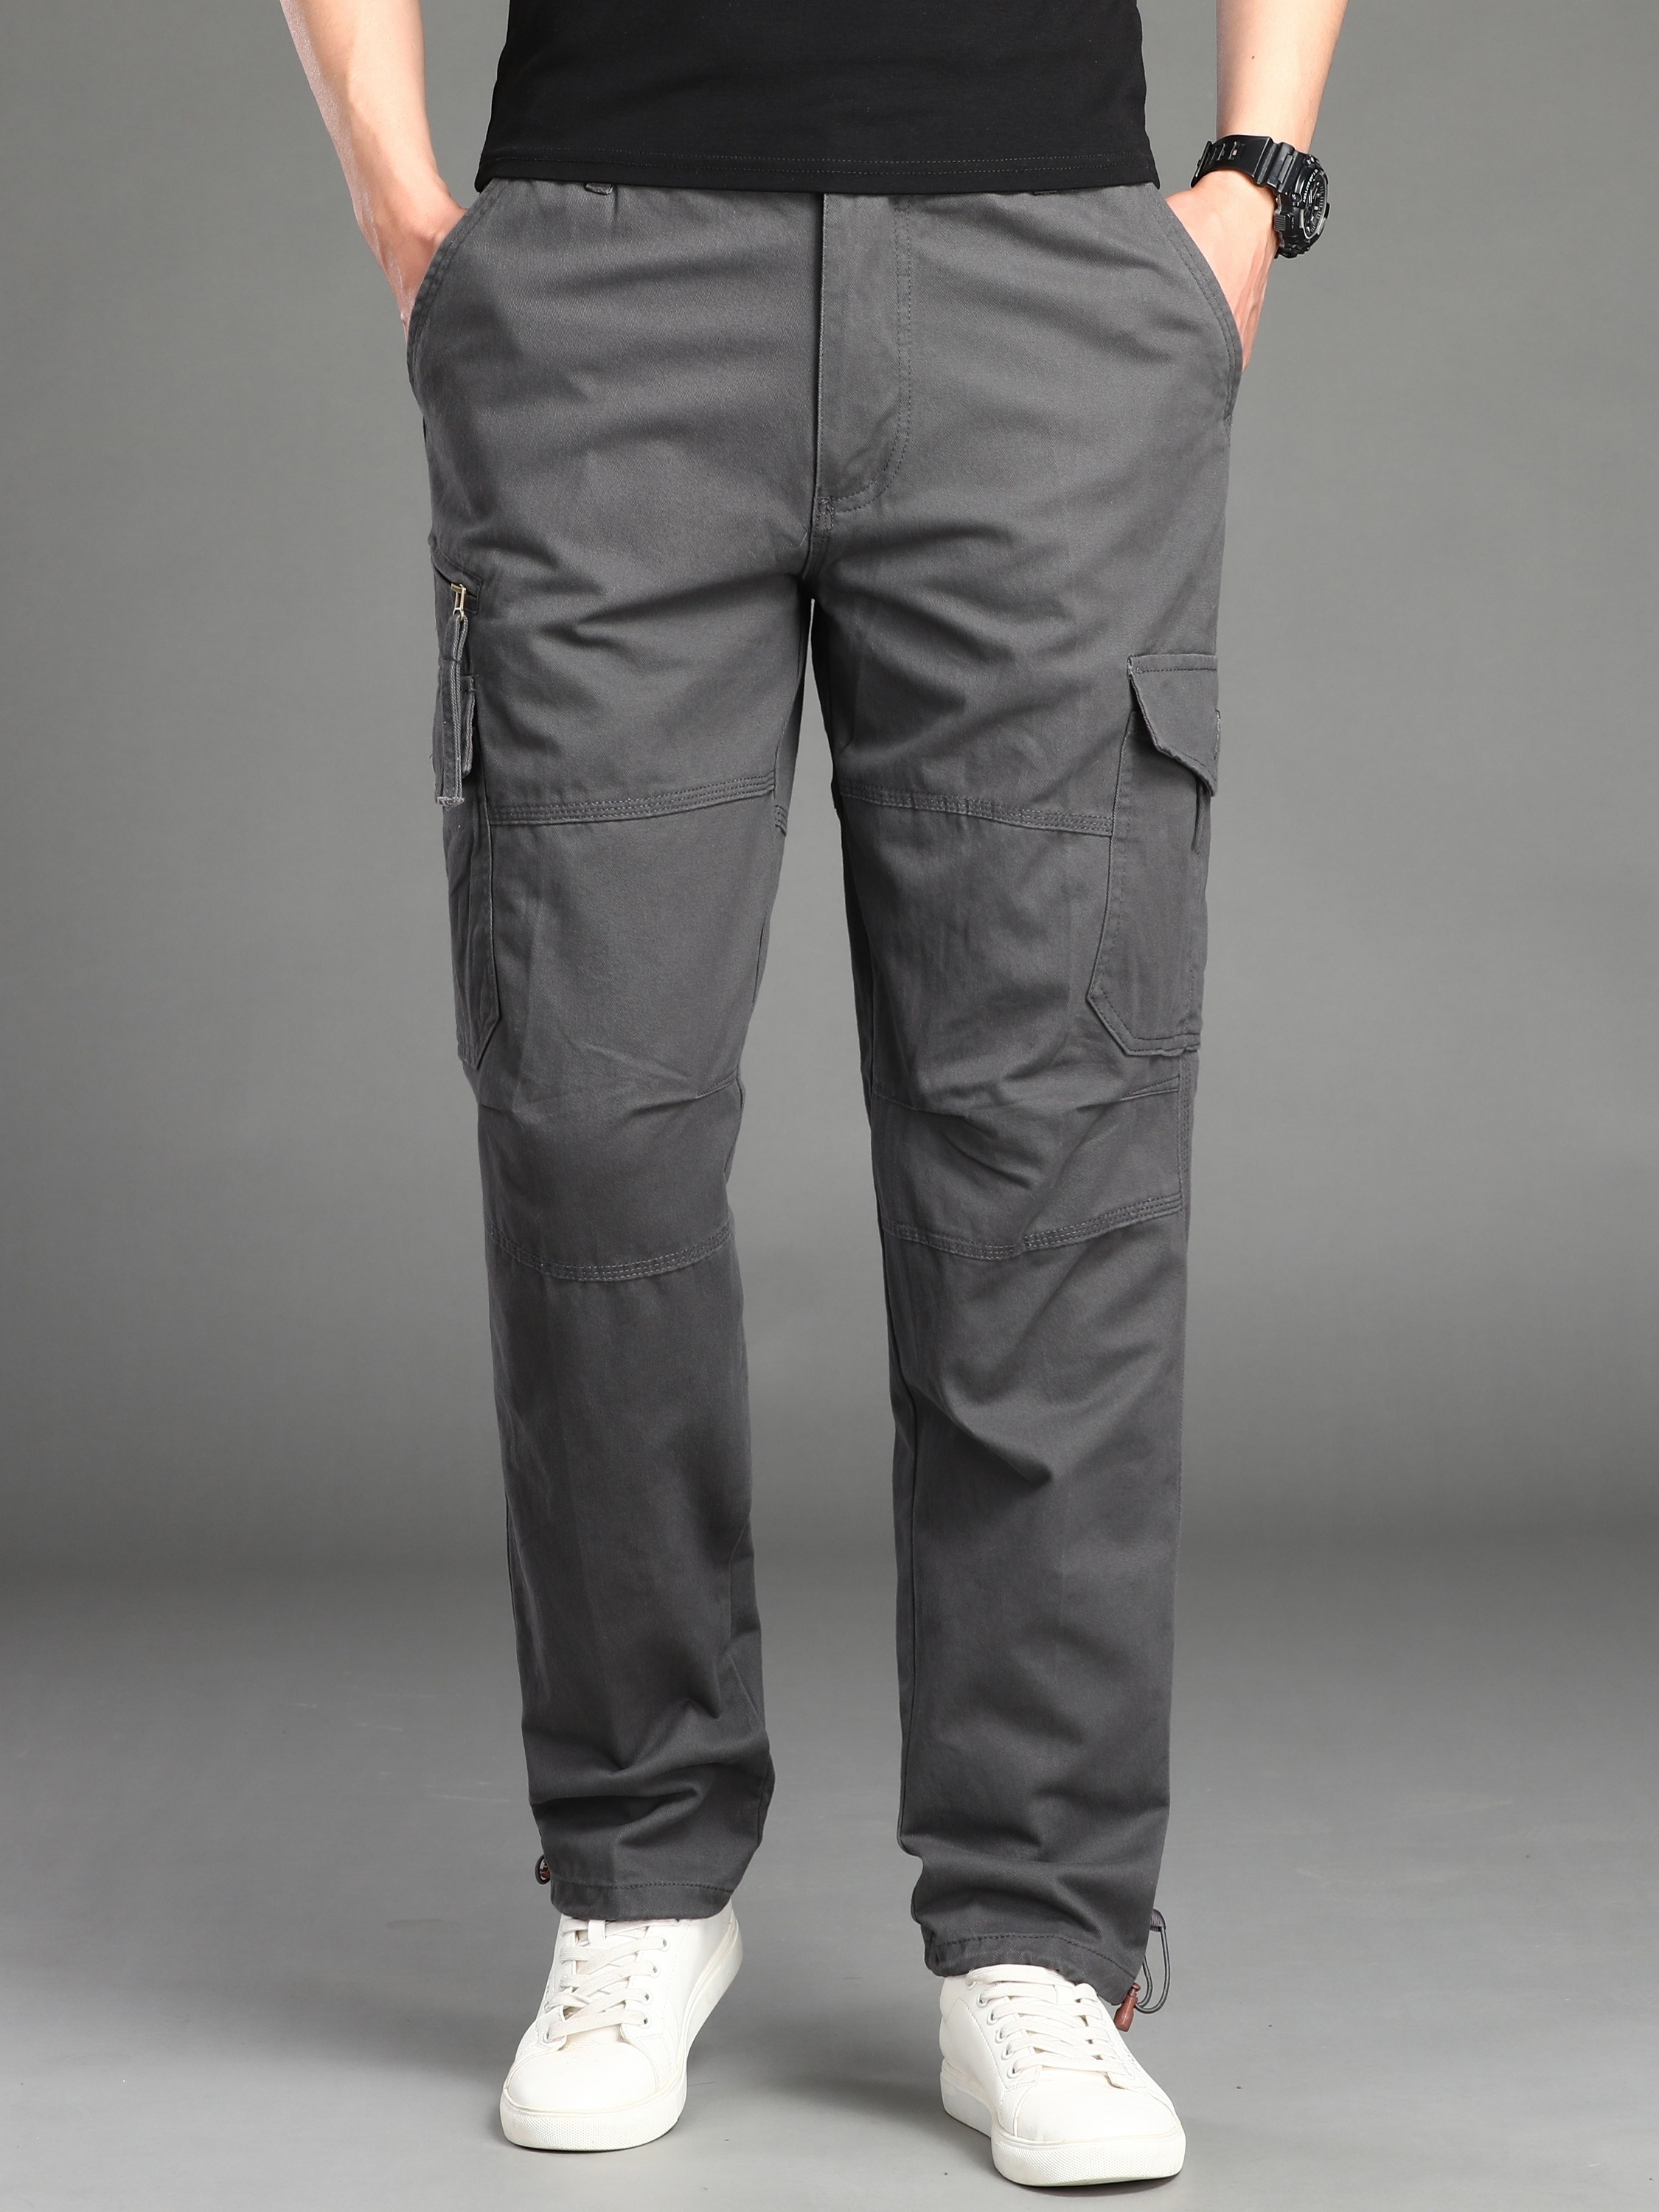 Pantalones de trabajo para hombre, elásticos, con cintura elástica,  pantalones cargo casuales, sueltos, ligeros, pantalones de trabajo